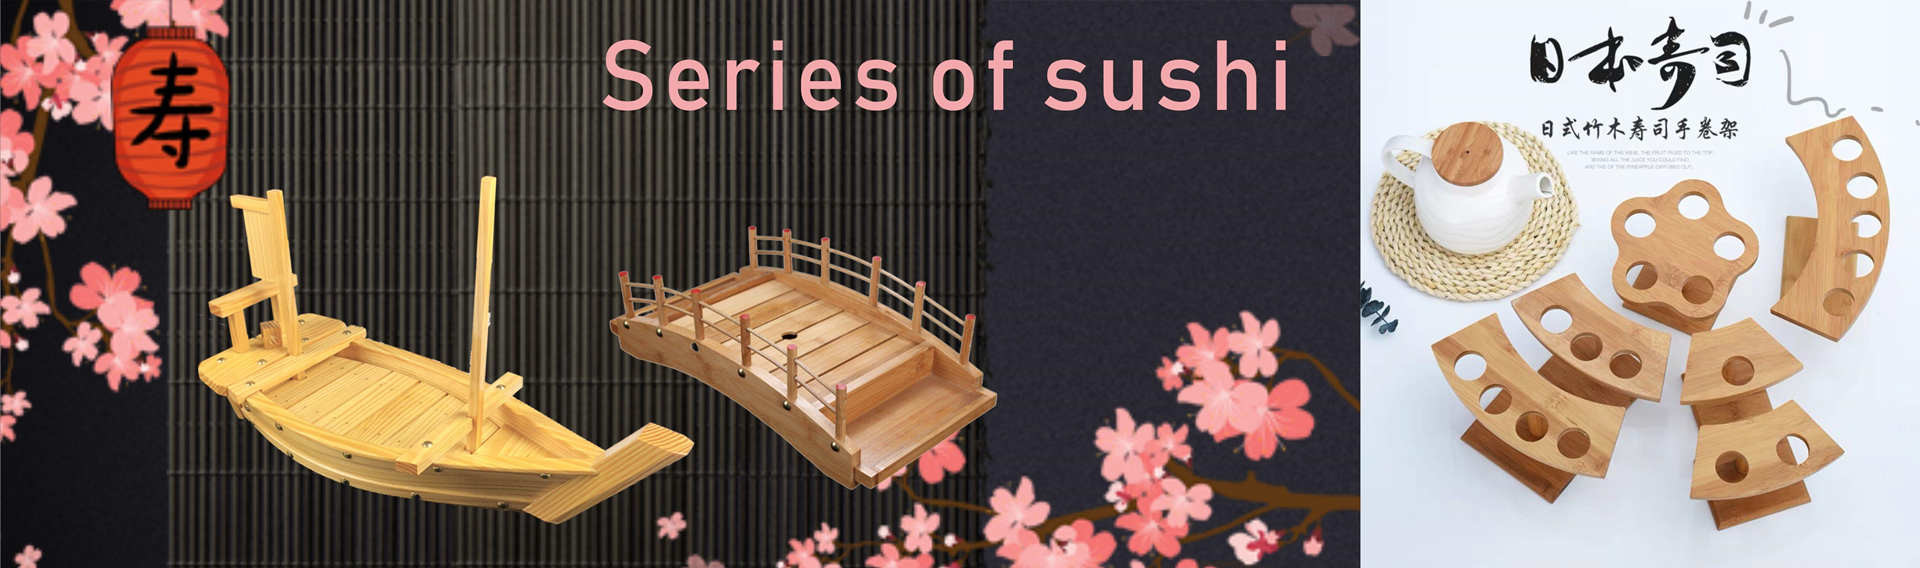 品質 寿司のボートの皿 サービス